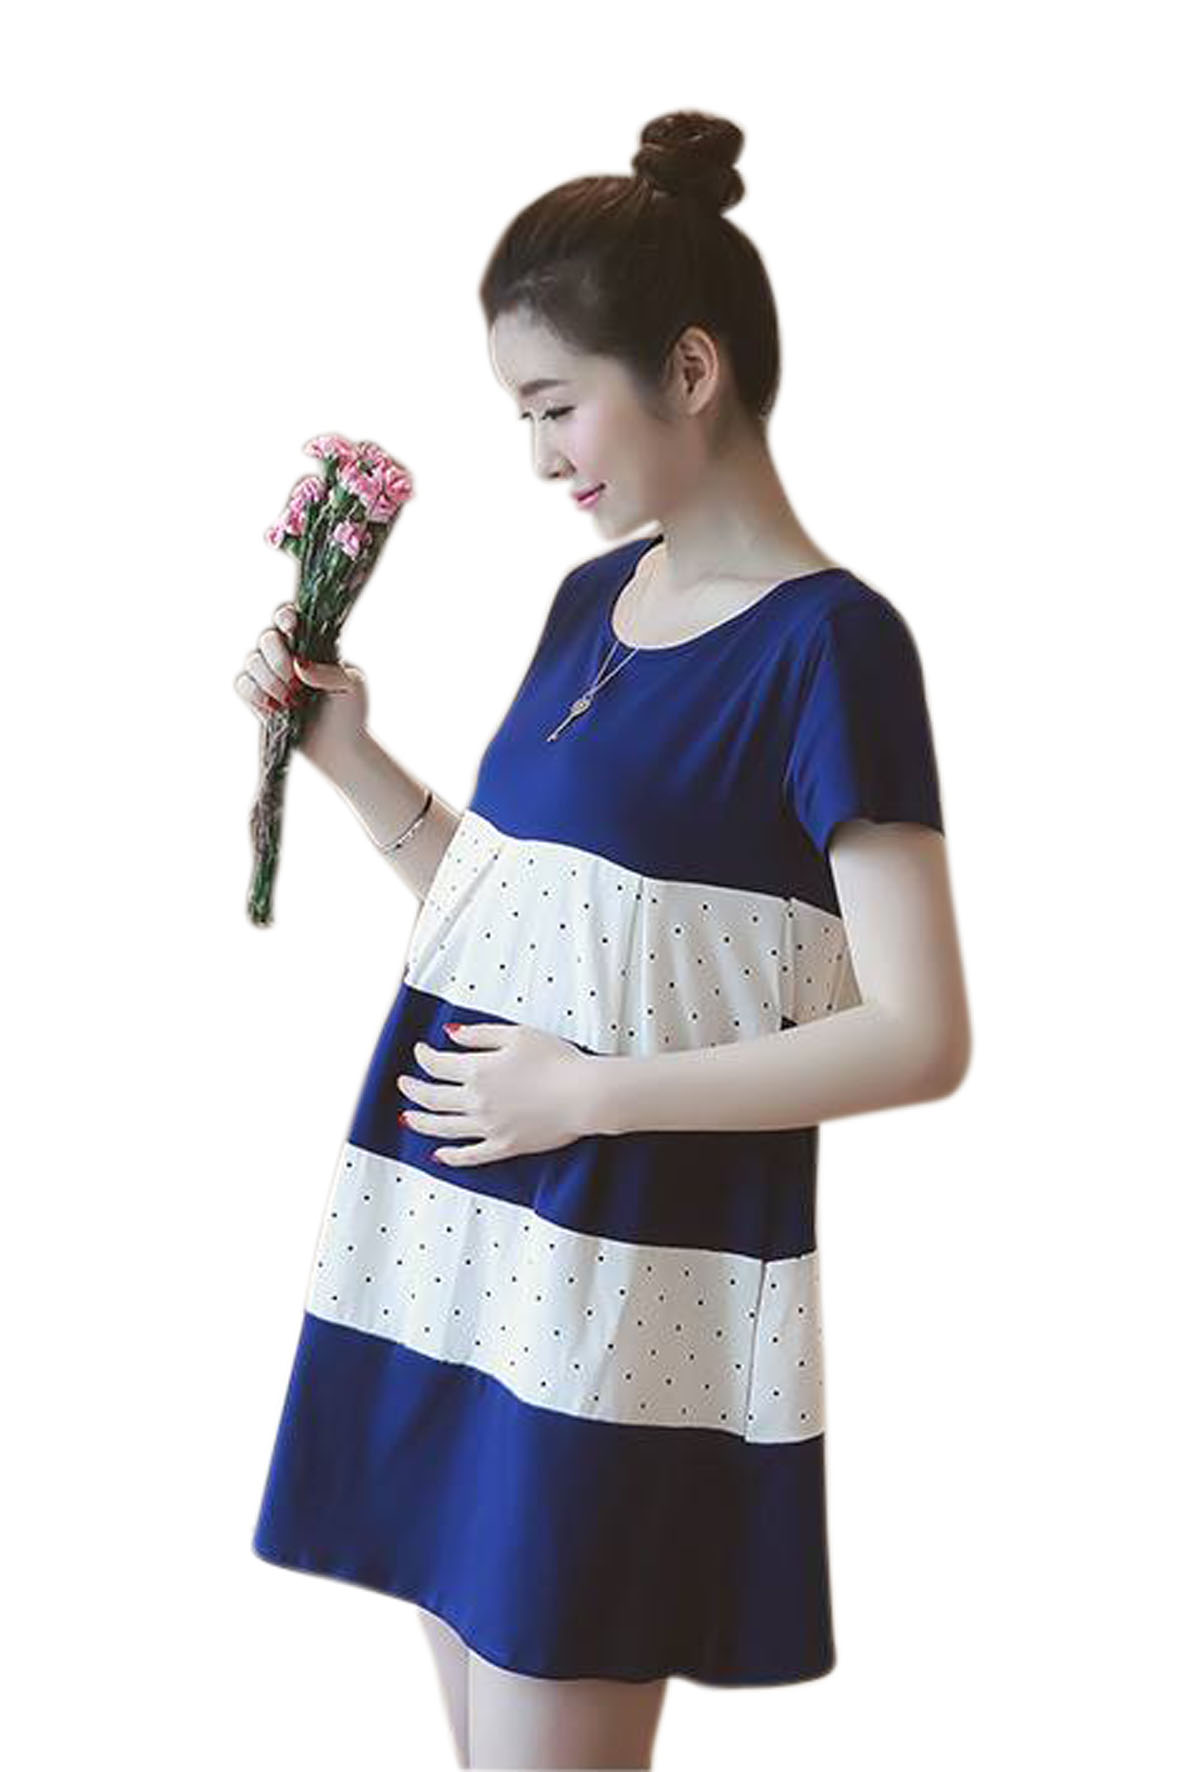 Váy Bầu Phối Xanh Chấm Bi Trắng - MYC 1151